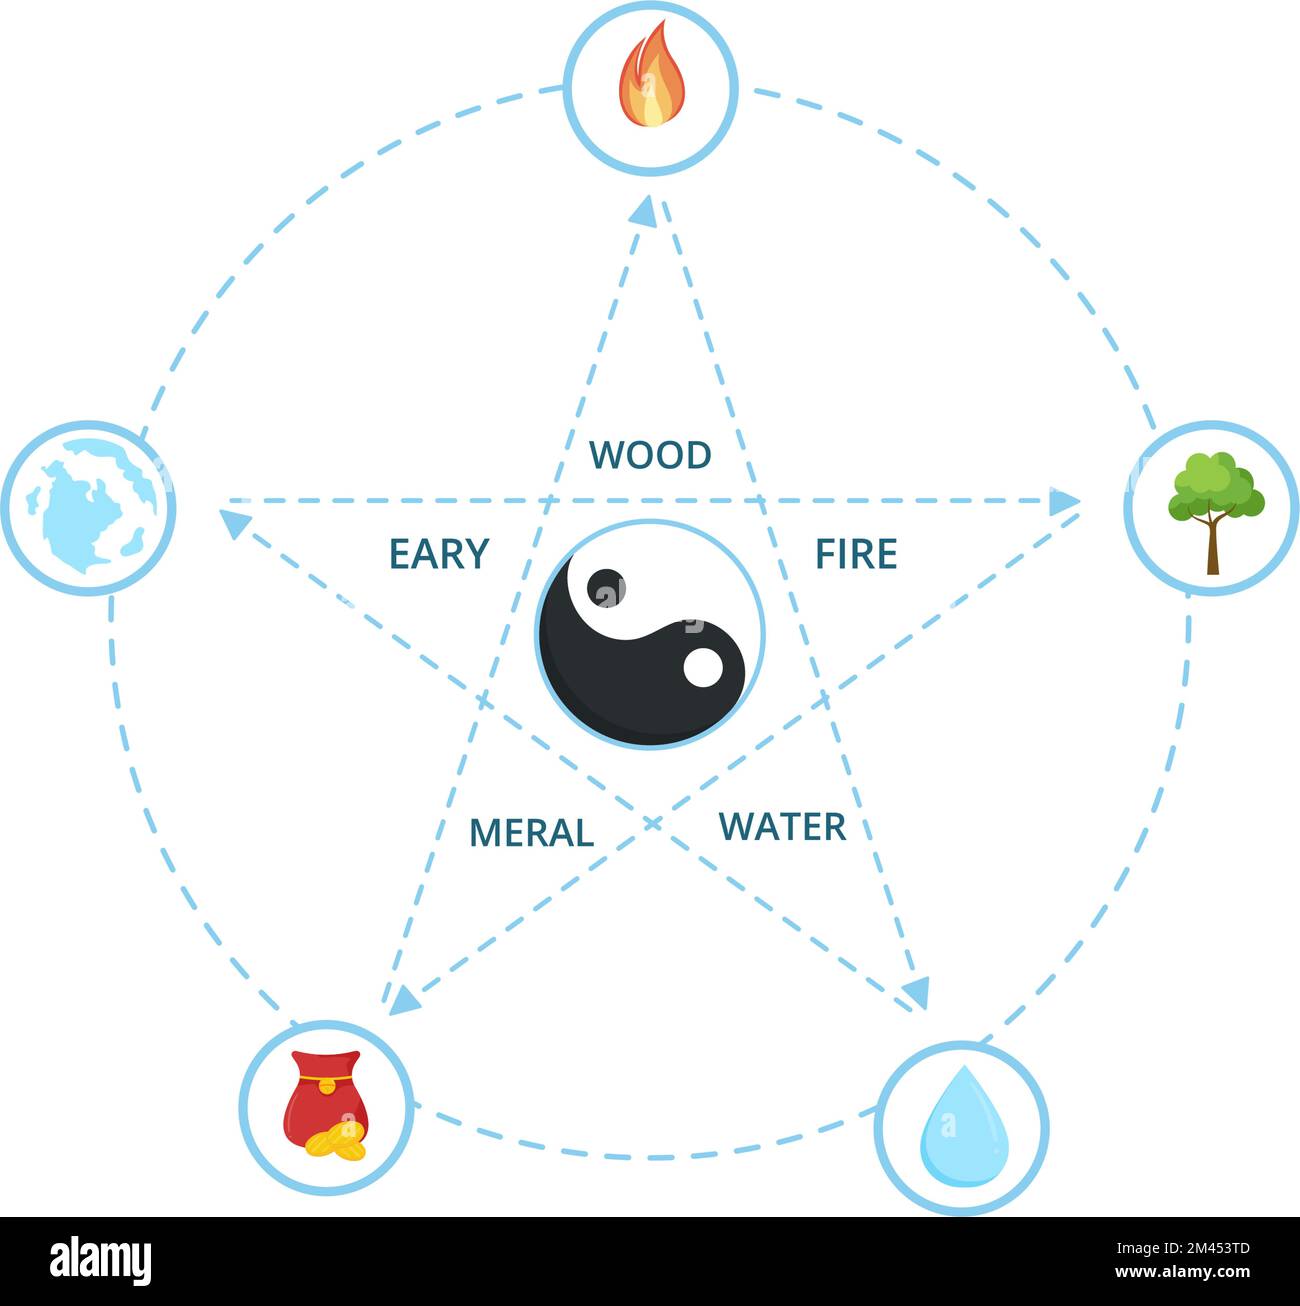 Feng Shui 5 Elemente der Natur in Kreisen, verbunden durch Linien mit Wasser, Holz, Feuer, Erde, Metall in flacher Cartoon handgezeichnete Vorlagen Illustration Stock Vektor